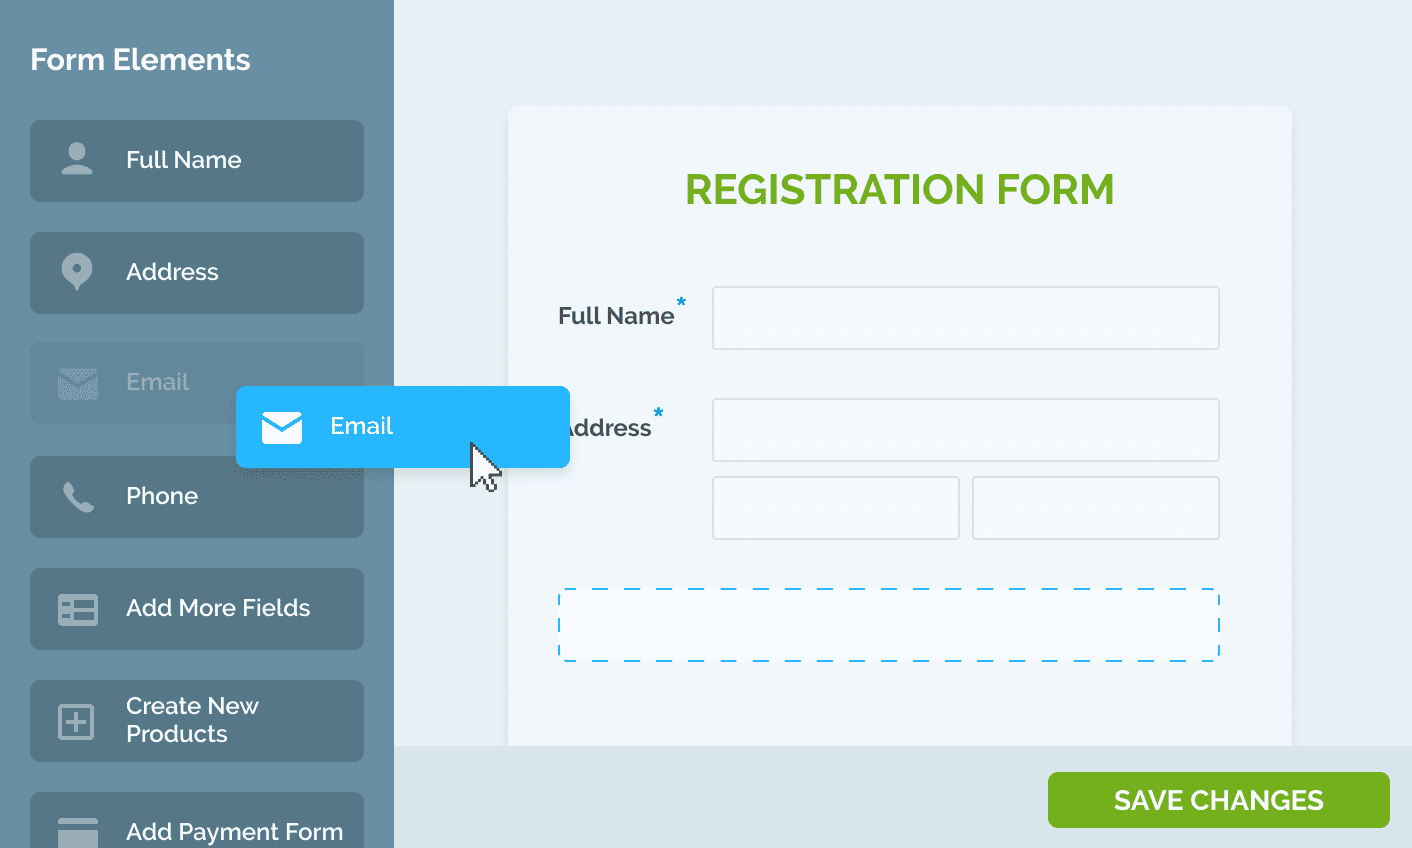 Regpack's registration form